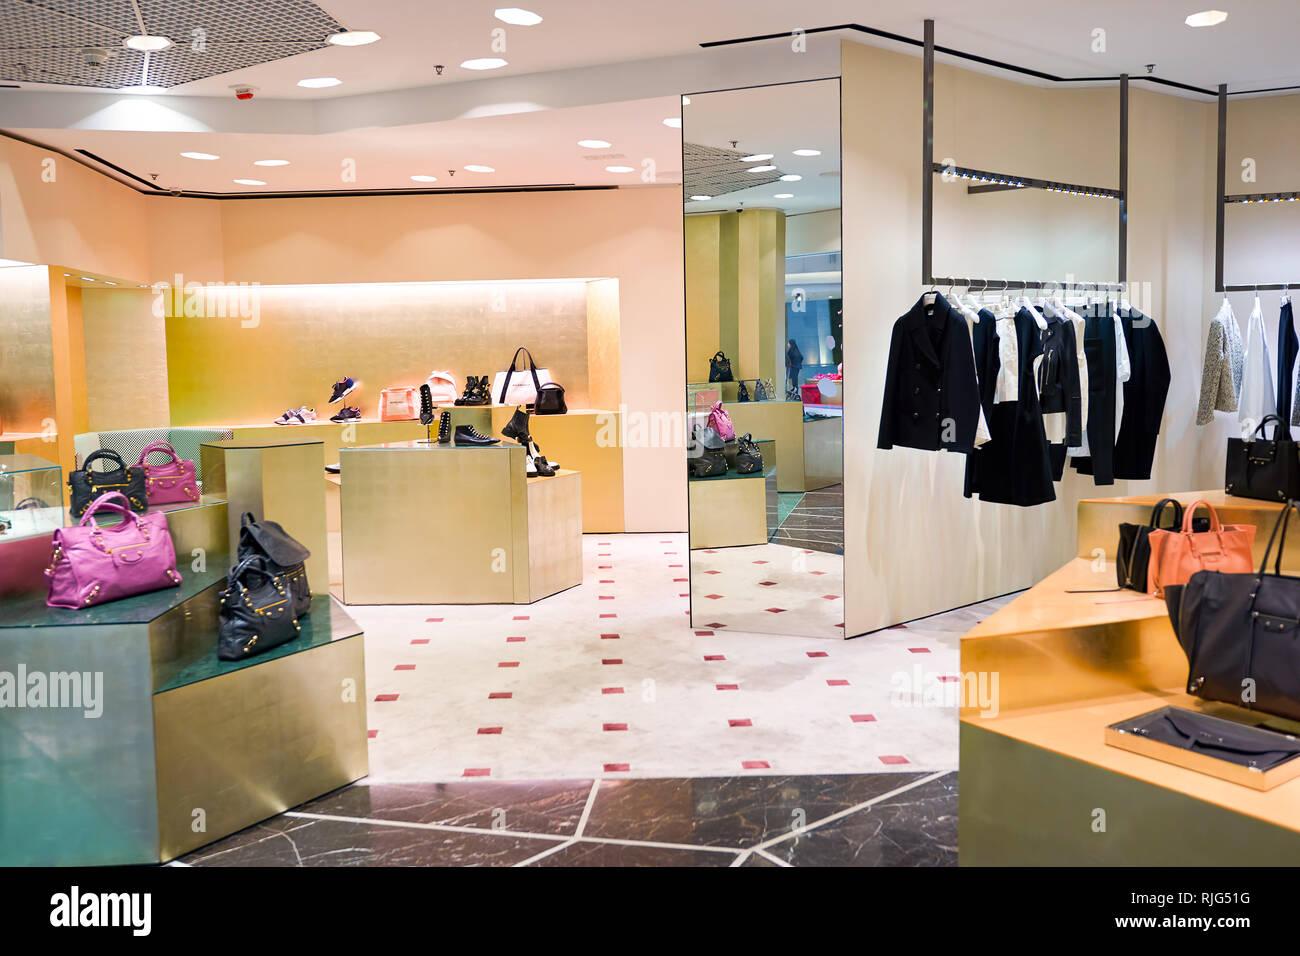 Hongkong - Januar 26, 2016: Design von Balenciaga Store unter Elemente  Shopping Mall. Balenciaga ist eine Europäische luxus Fashion House von  Cristobal gegründet Stockfotografie - Alamy